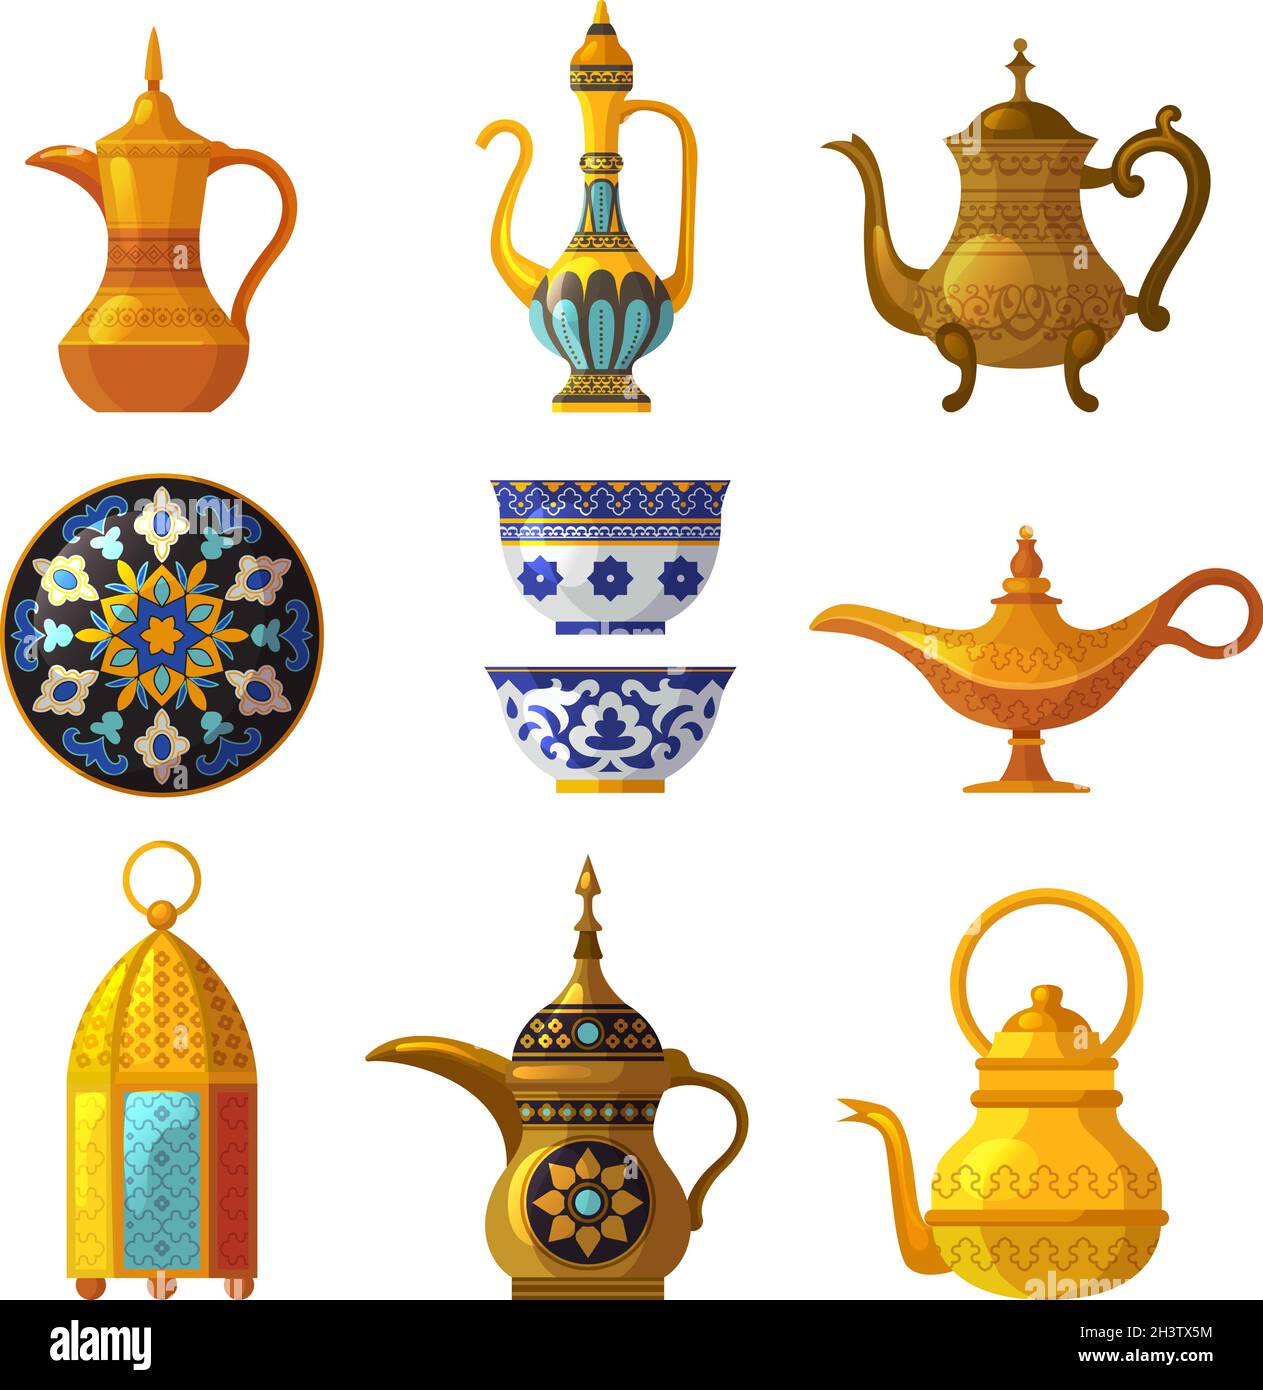 Ancien patrimoine arabe.Poterie culturelle traditionnelle décorée avec des logos symboles saoudiens Vector arabia Set Illustration de Vecteur